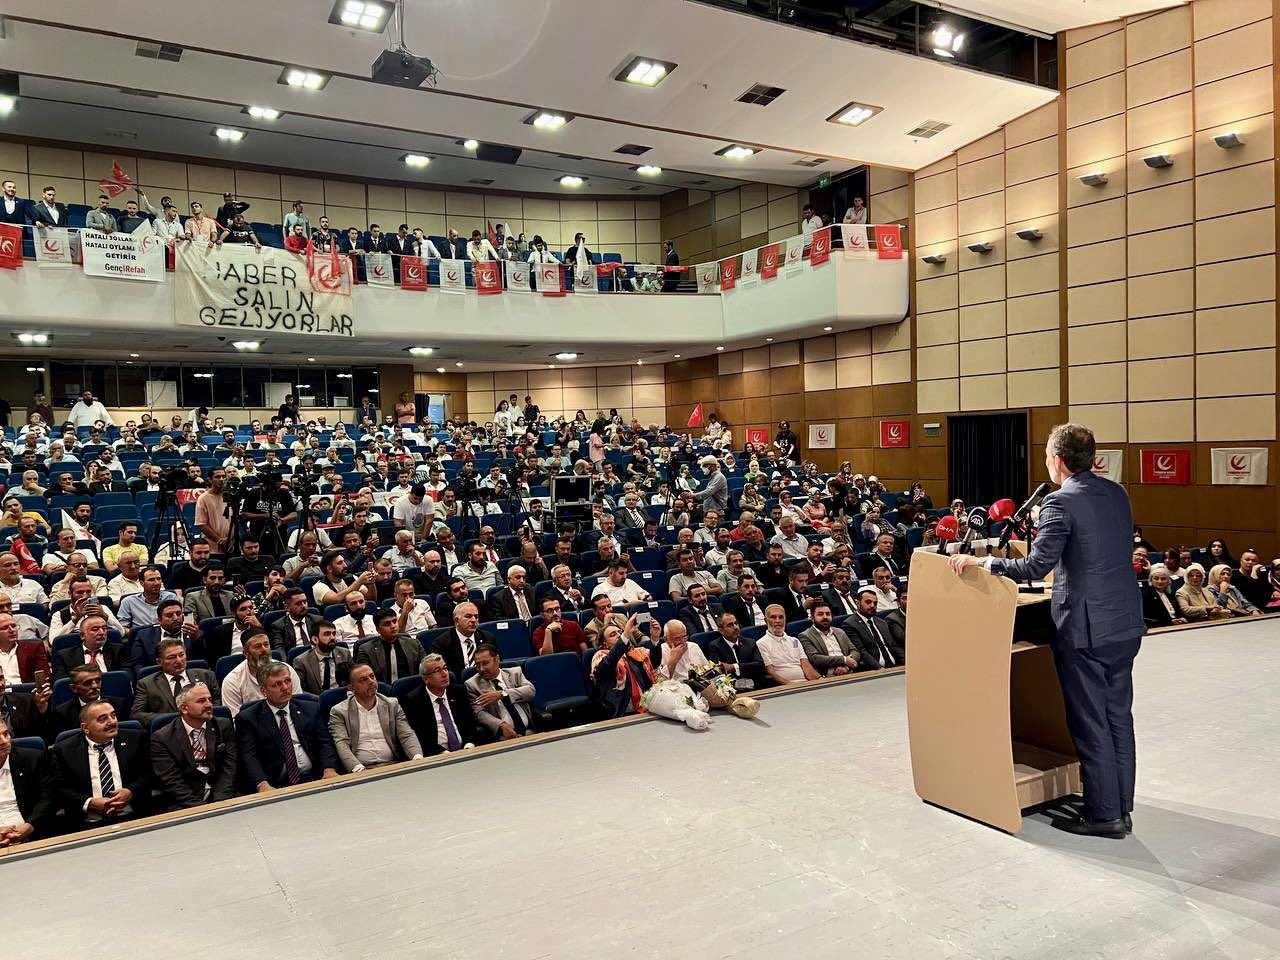 Yeniden Refah Partisinin 2. olağan kongresi İzmir’de gerçekleştirildi